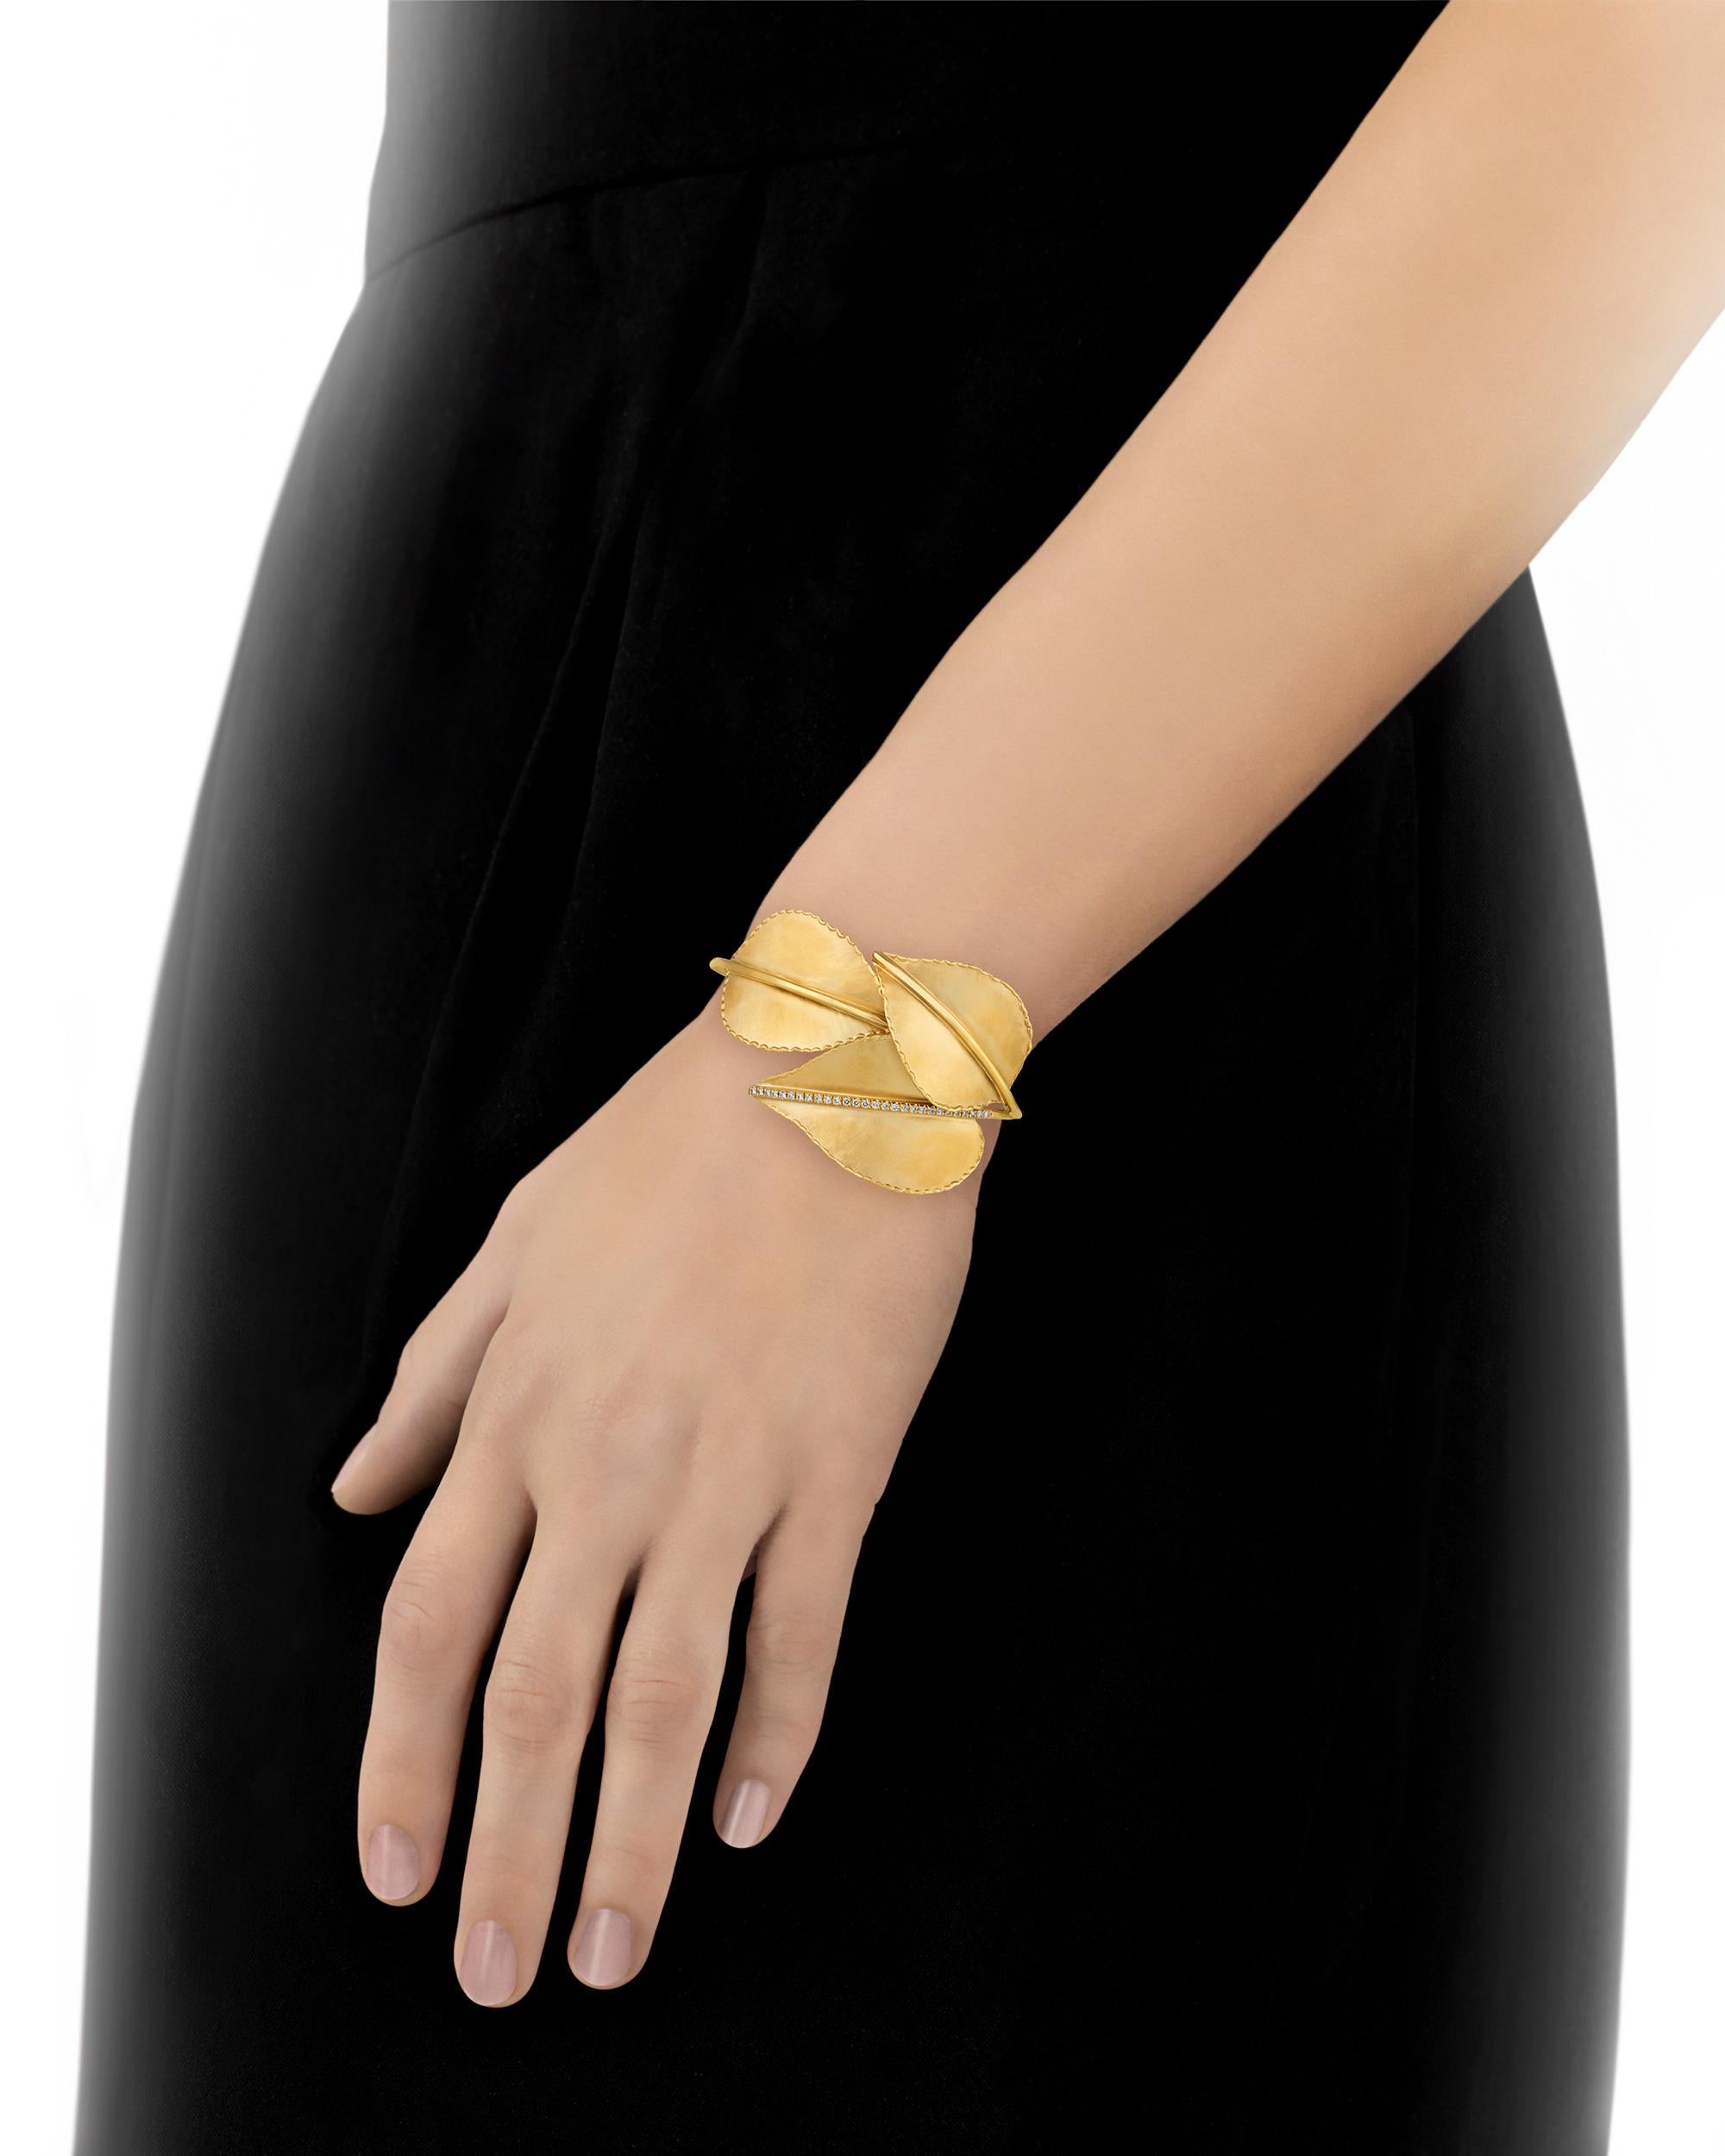 Ce bracelet élégant et charmant est composé de trois belles feuilles d'or disposées avec art pour former une manchette de bracelet. Le bracelet en or lustré 14K est rehaussé de diamants blancs étincelants totalisant 0,28 carat. Le design unique